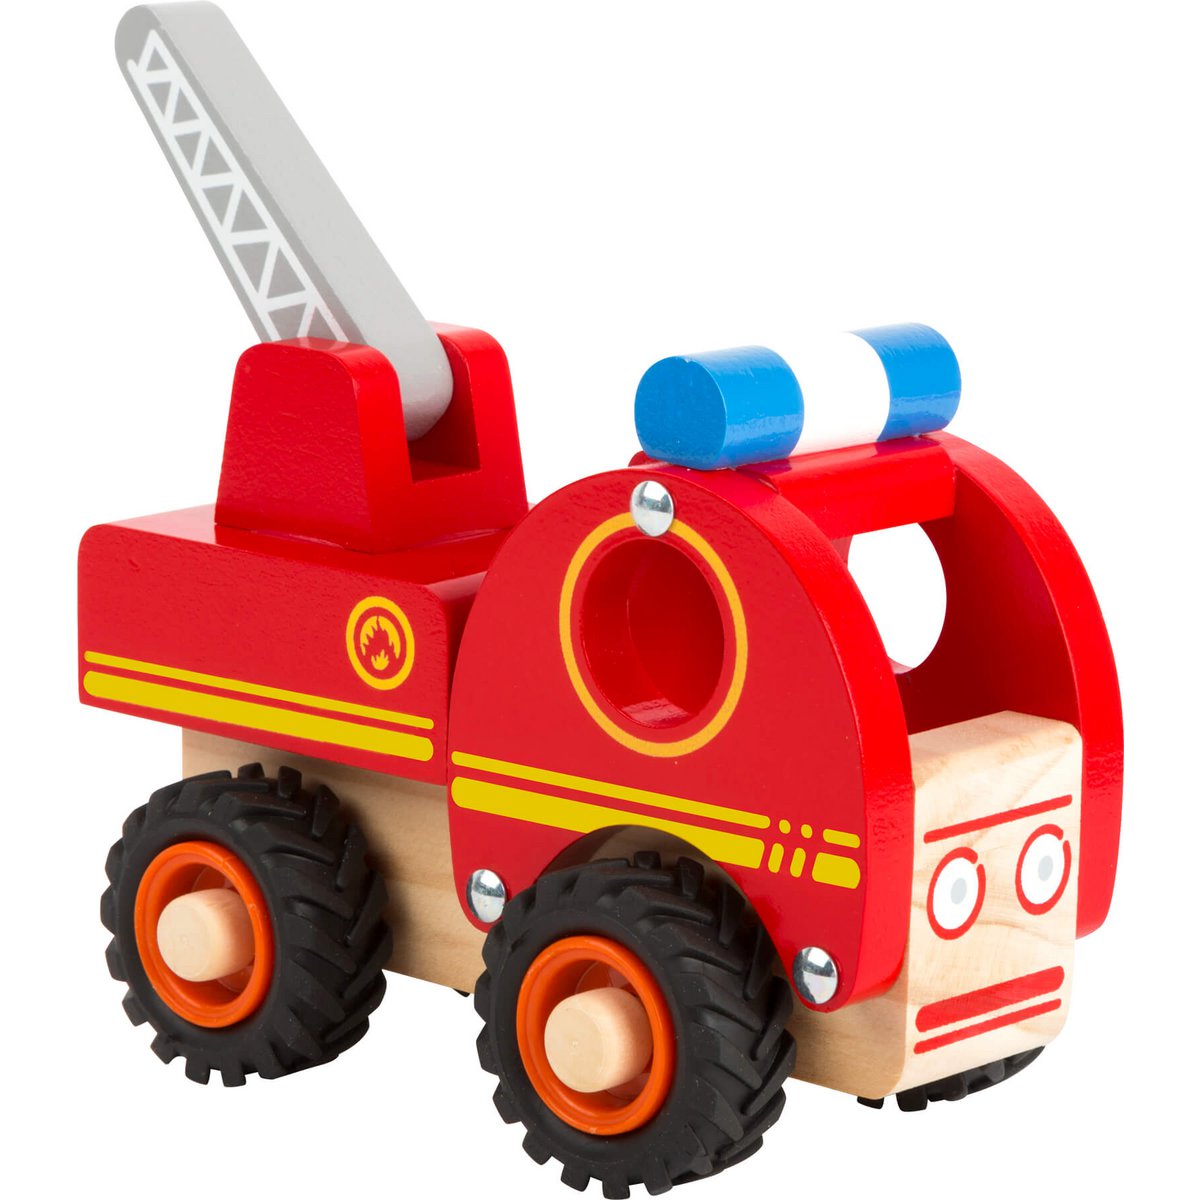 Rotes Feuerwehrauto aus 100% FSC-zertifiziertem Holz mit beweglicher Leiter